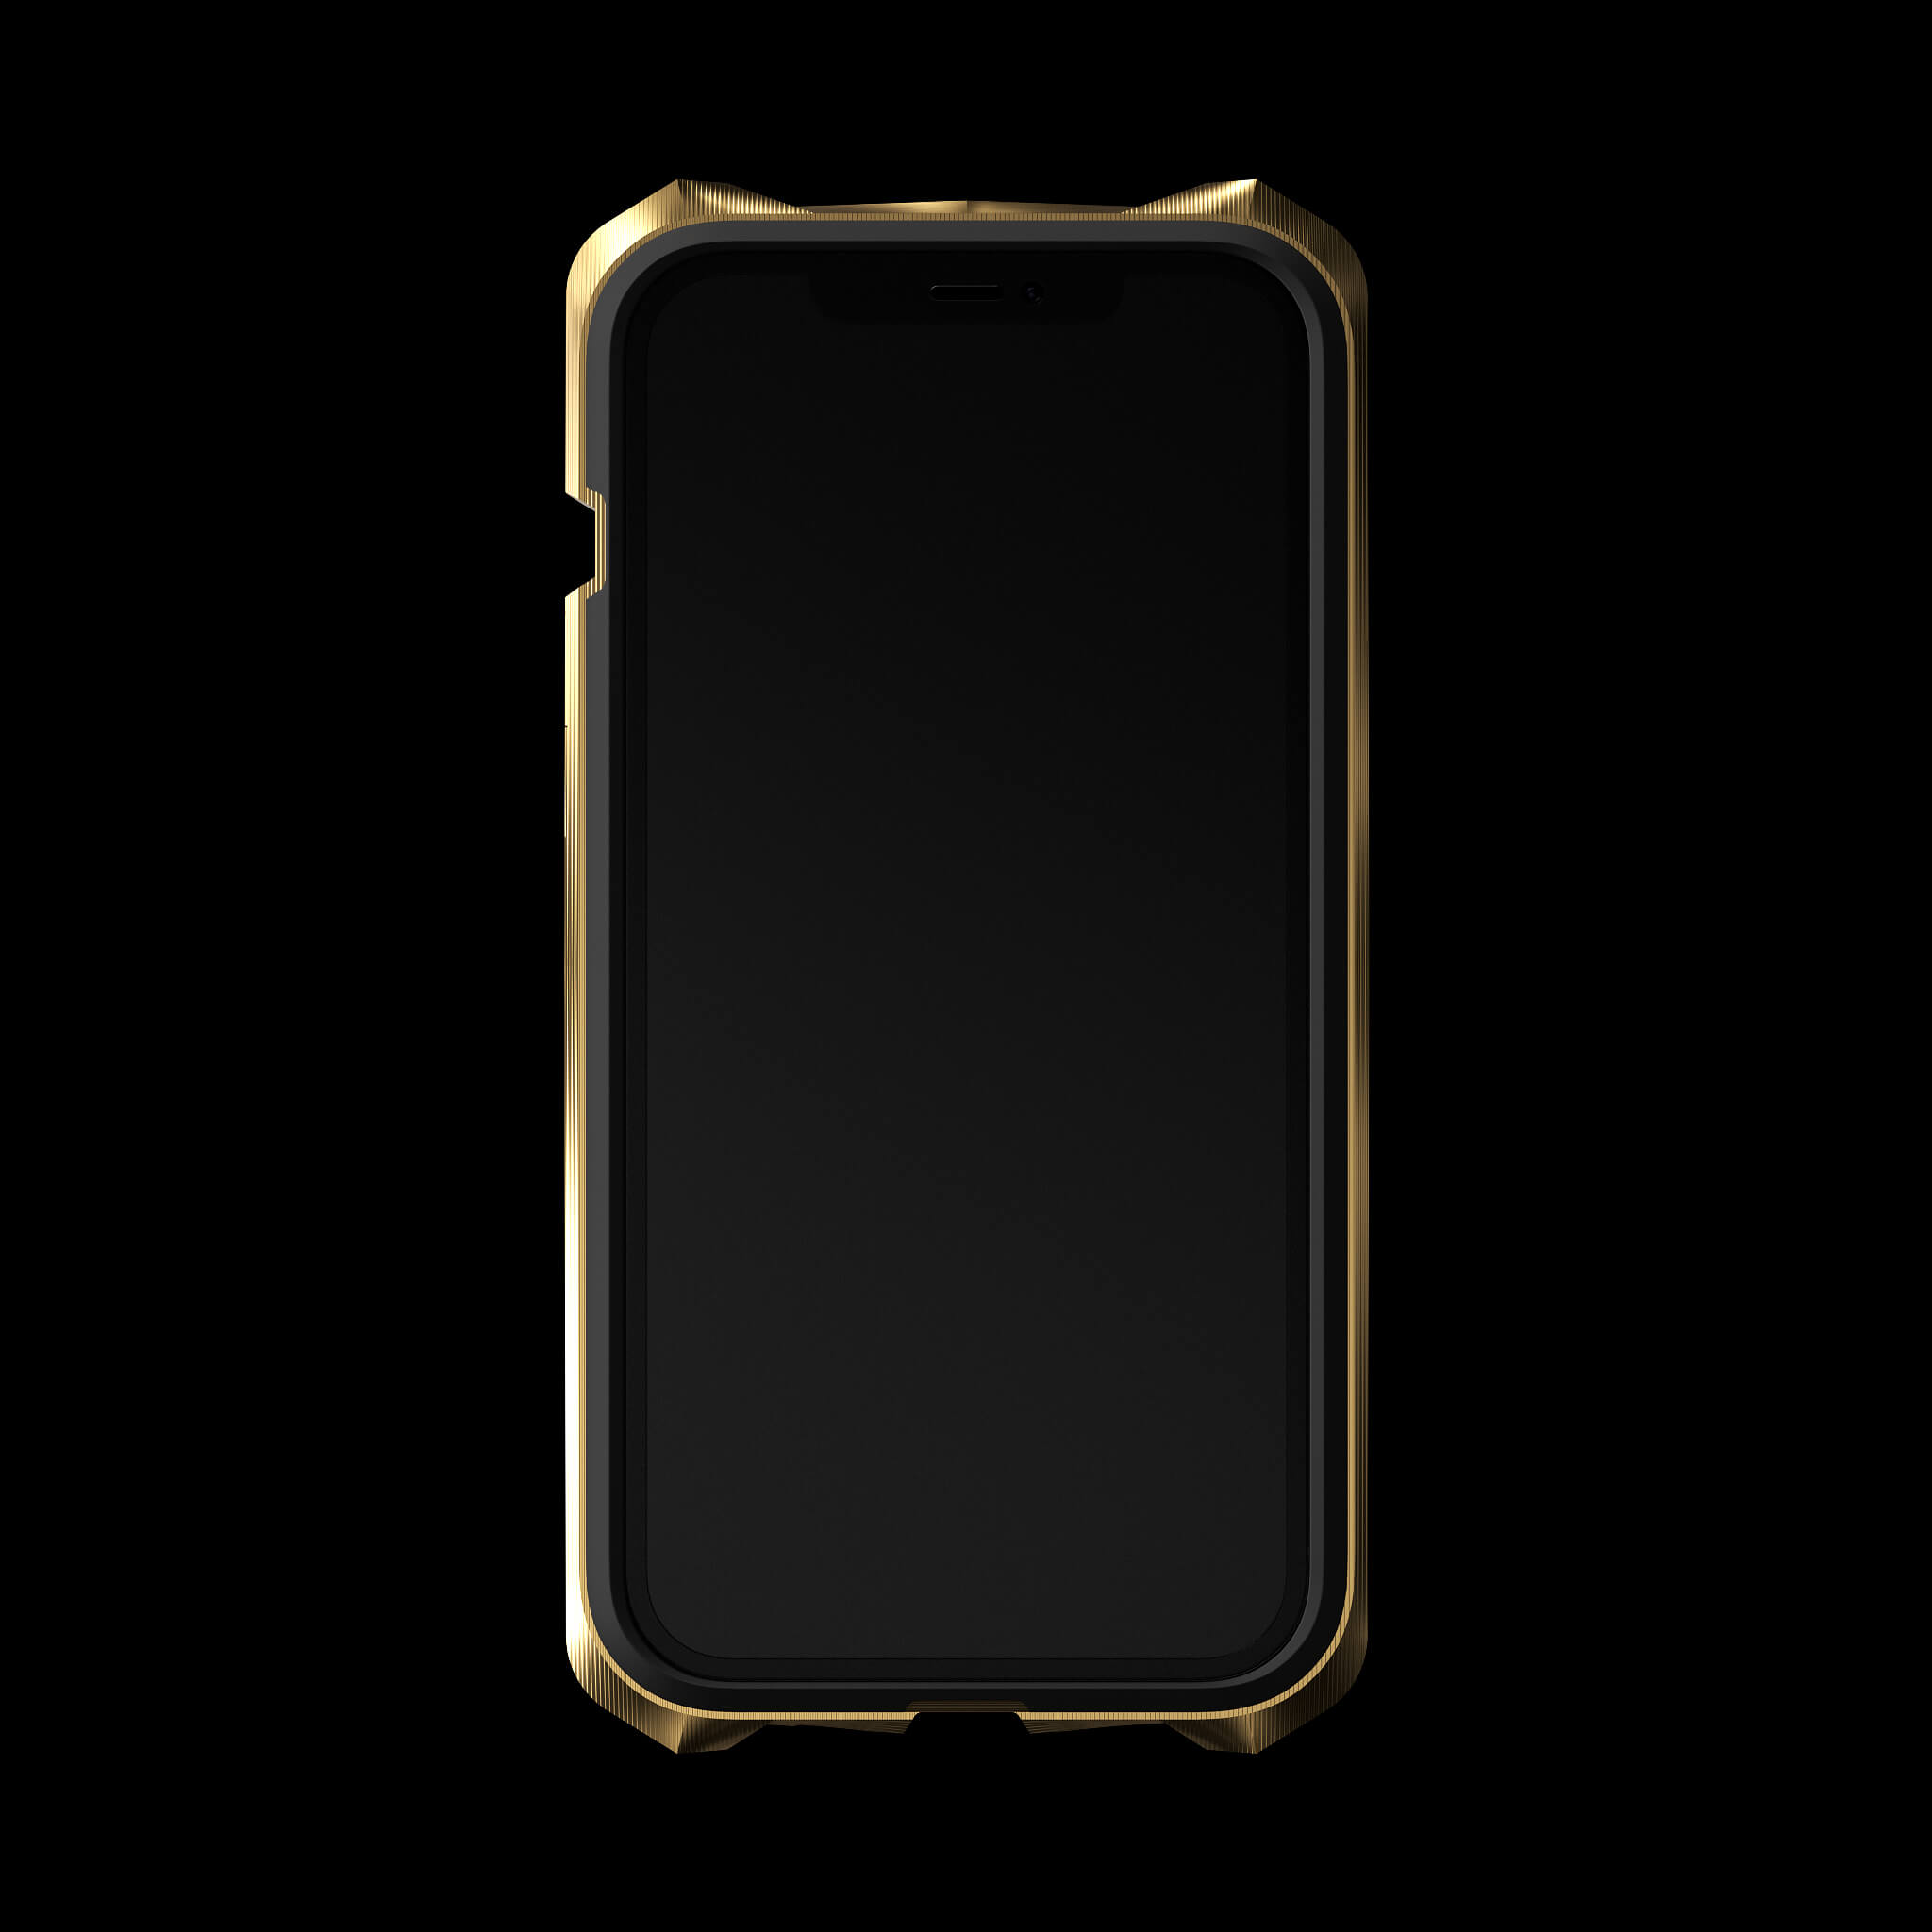 Bạn muốn tạo cho chiếc iPhone 12 Pro của mình một vẻ ngoài thật đặc biệt và sang trọng? Hãy đến với ốp iPhone 12 Pro hợp kim vàng, một sản phẩm không chỉ bảo vệ điện thoại mà còn làm nổi bật phong cách của bạn. Cùng chiêm ngưỡng hình ảnh đẹp mắt của sản phẩm này.